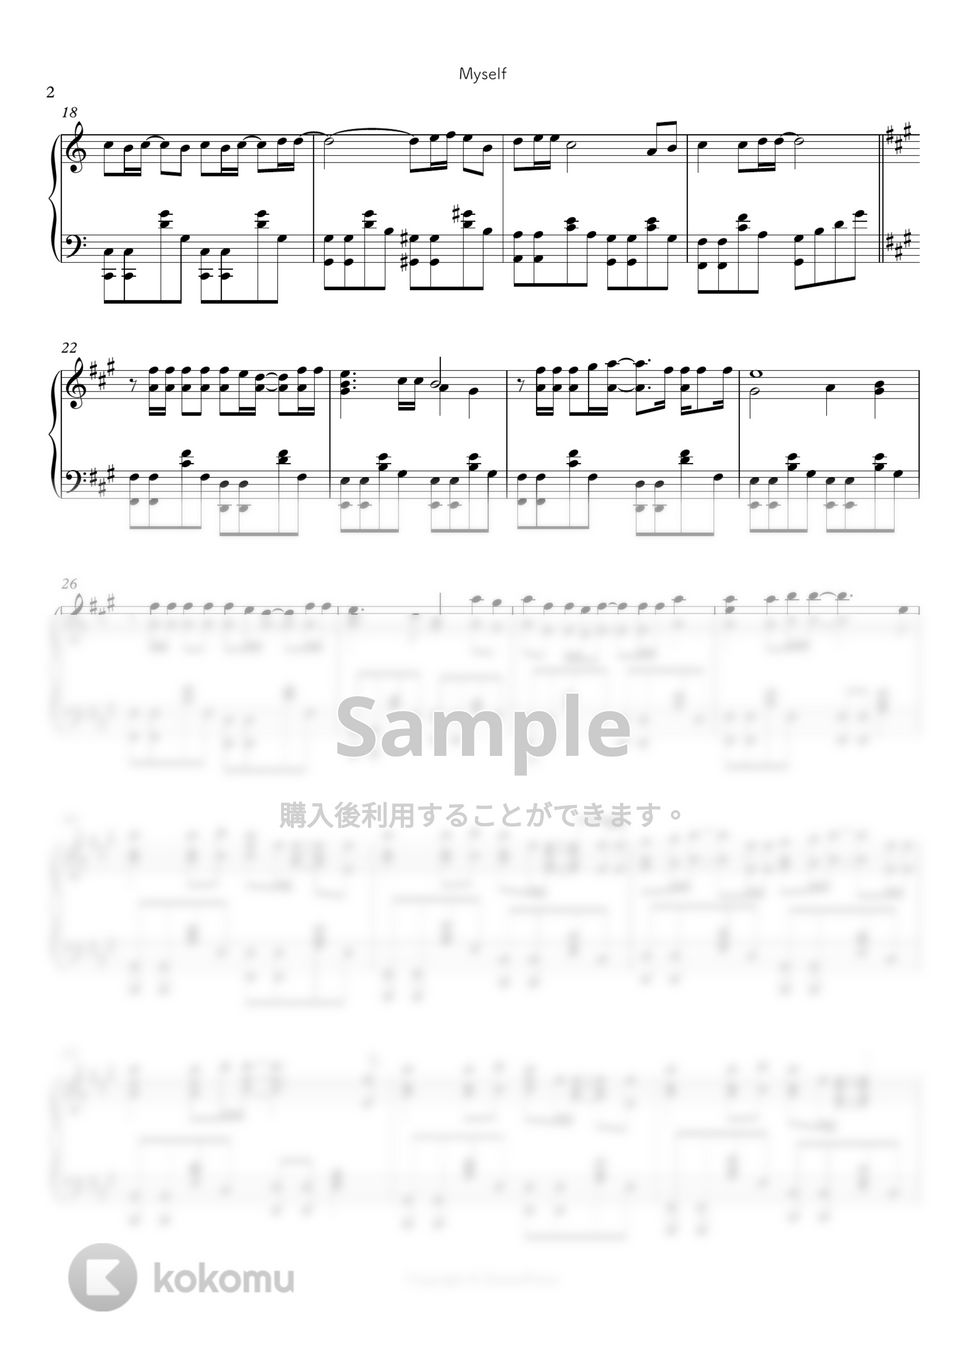 満月をさがして - Myself by シビウォルピアノ